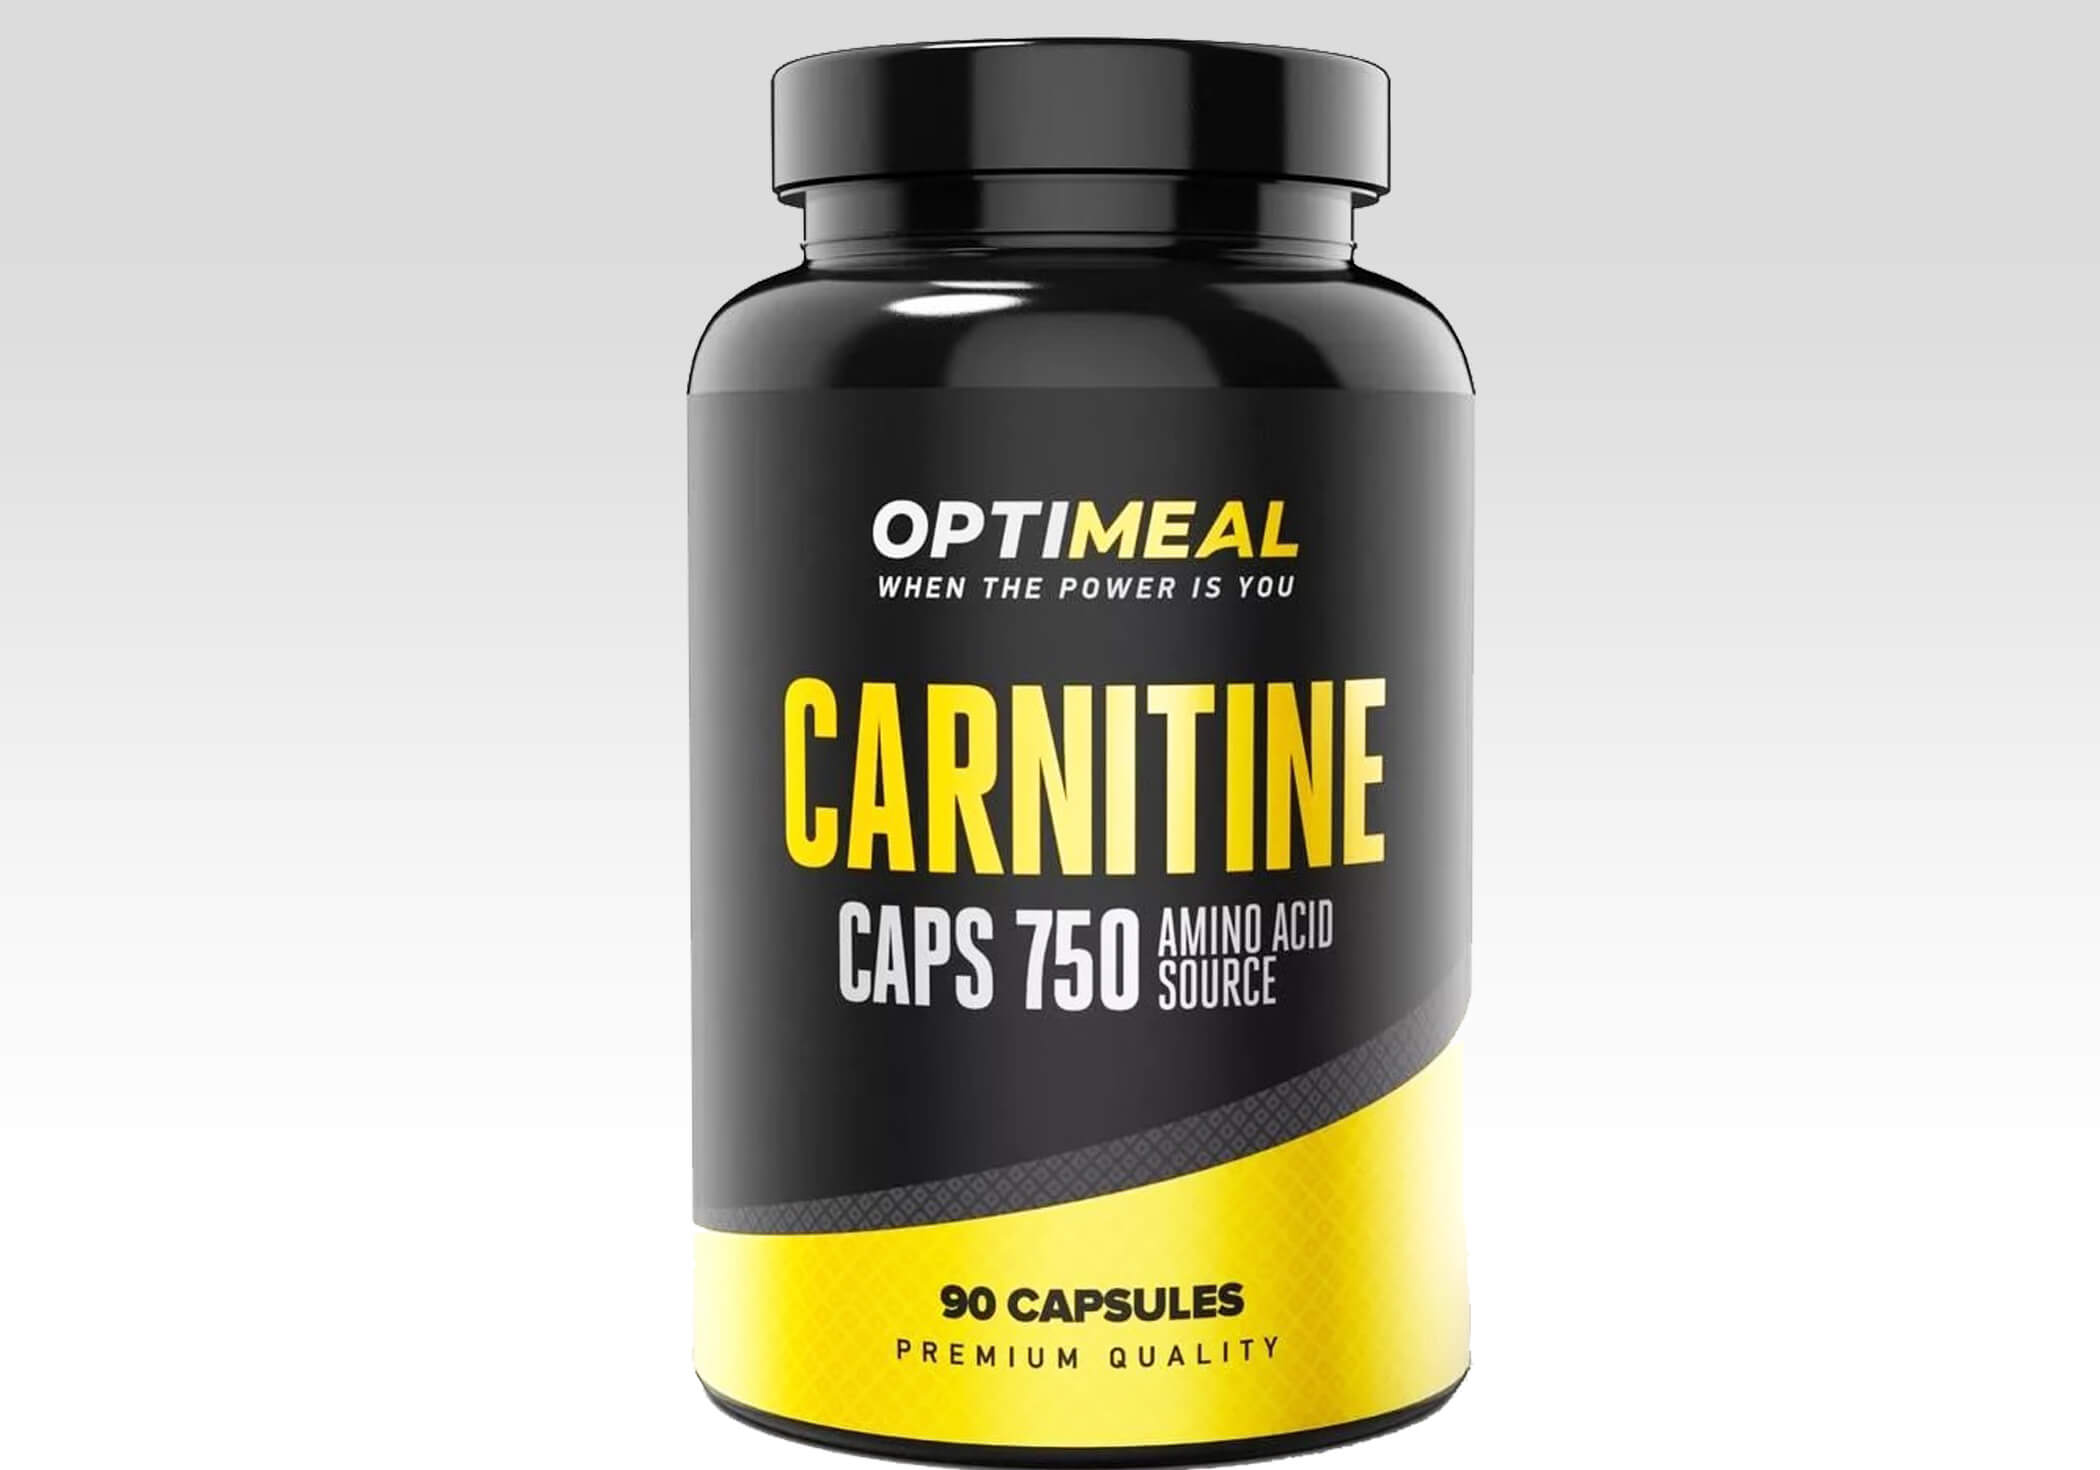 فوائد وأضرار الكارنيتين Carnitine للرجال والنساء والسعر وطريقة الاستخدام‎